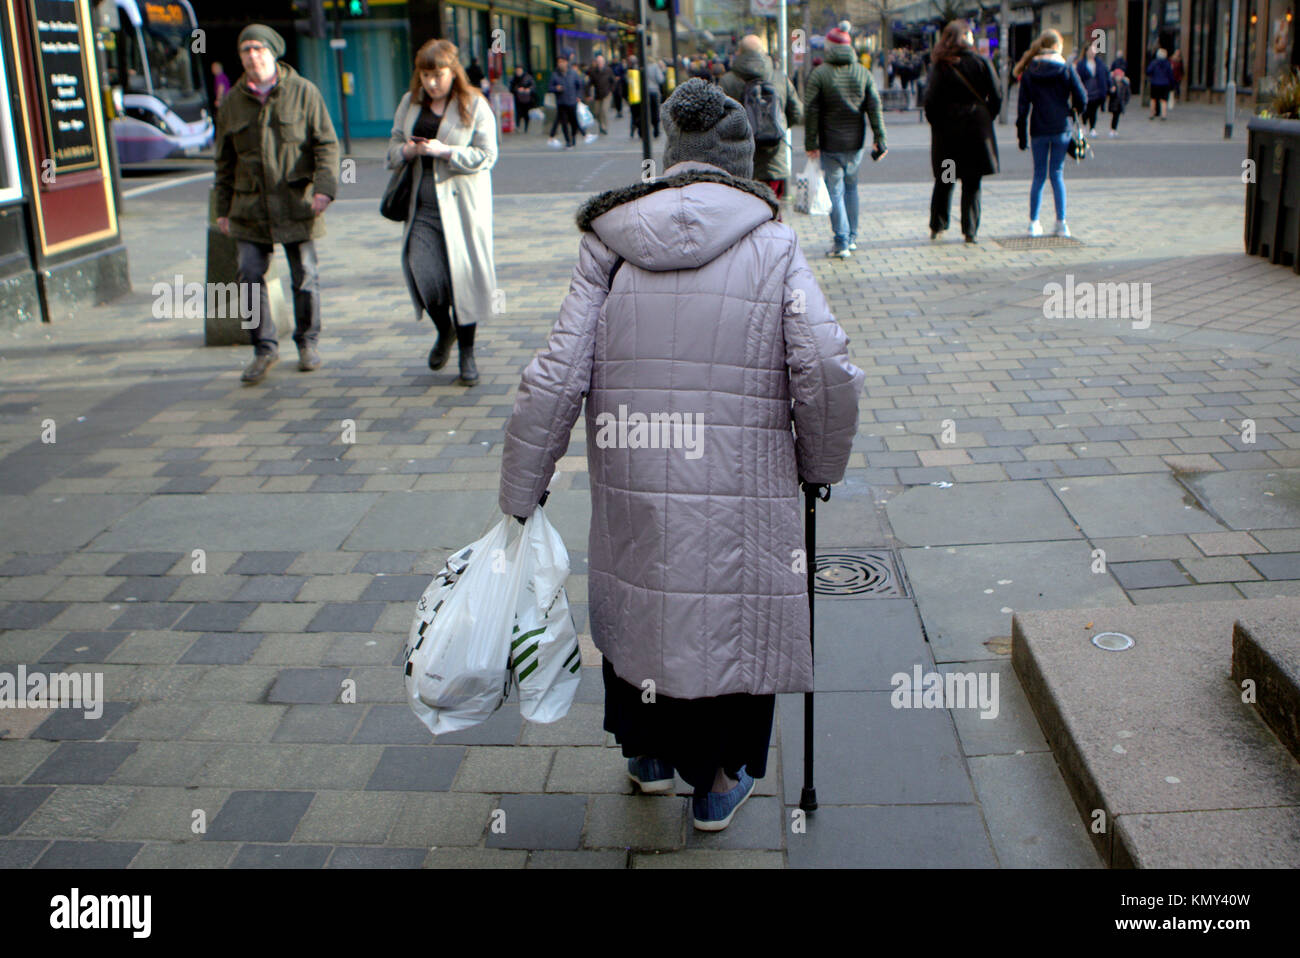 Vieja dama senior citizen luchando con bastón y bolsas de la compra visto desde atrás en la zona peatonal de la calle Sauchiehall de Glasgow Foto de stock